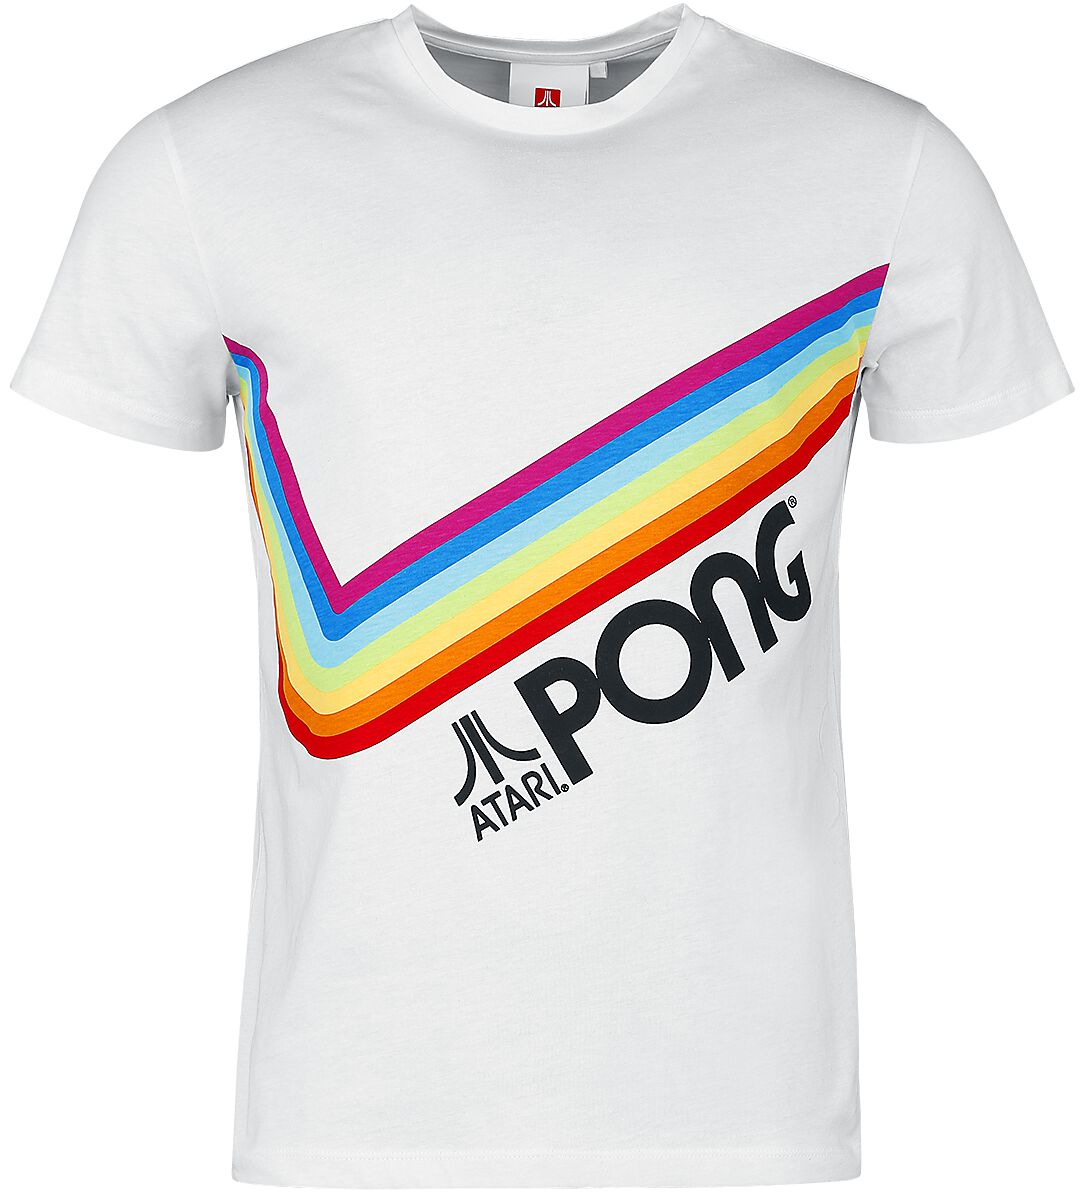 Atari - Gaming T-Shirt - Pong - Pride Rainbow - S bis 3XL - für Männer - Größe XL - weiß  - EMP exklusives Merchandise!